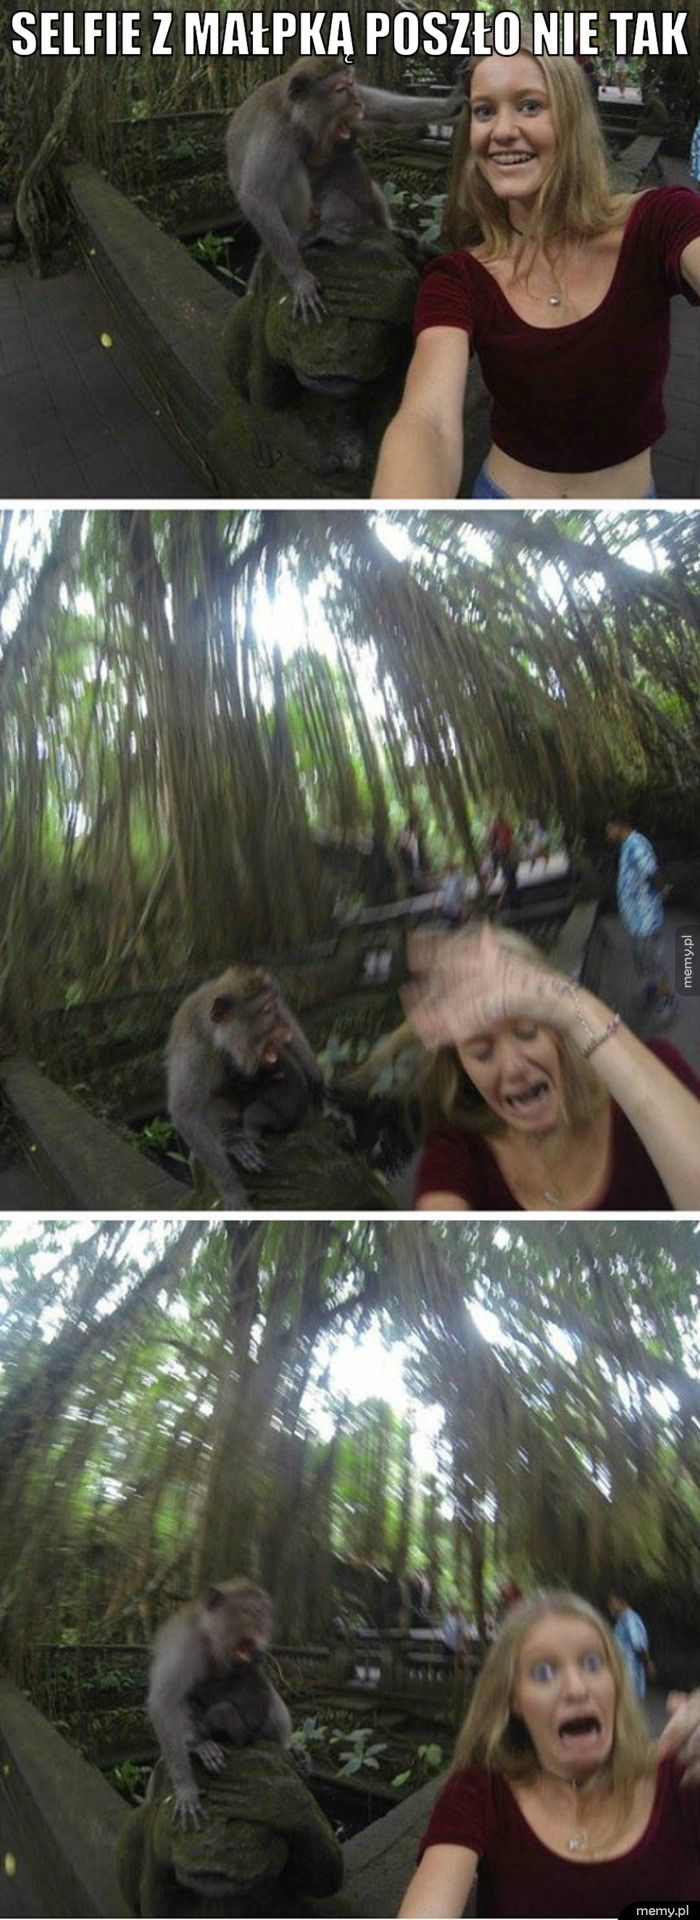 Selfie z małpką poszło nie tak  